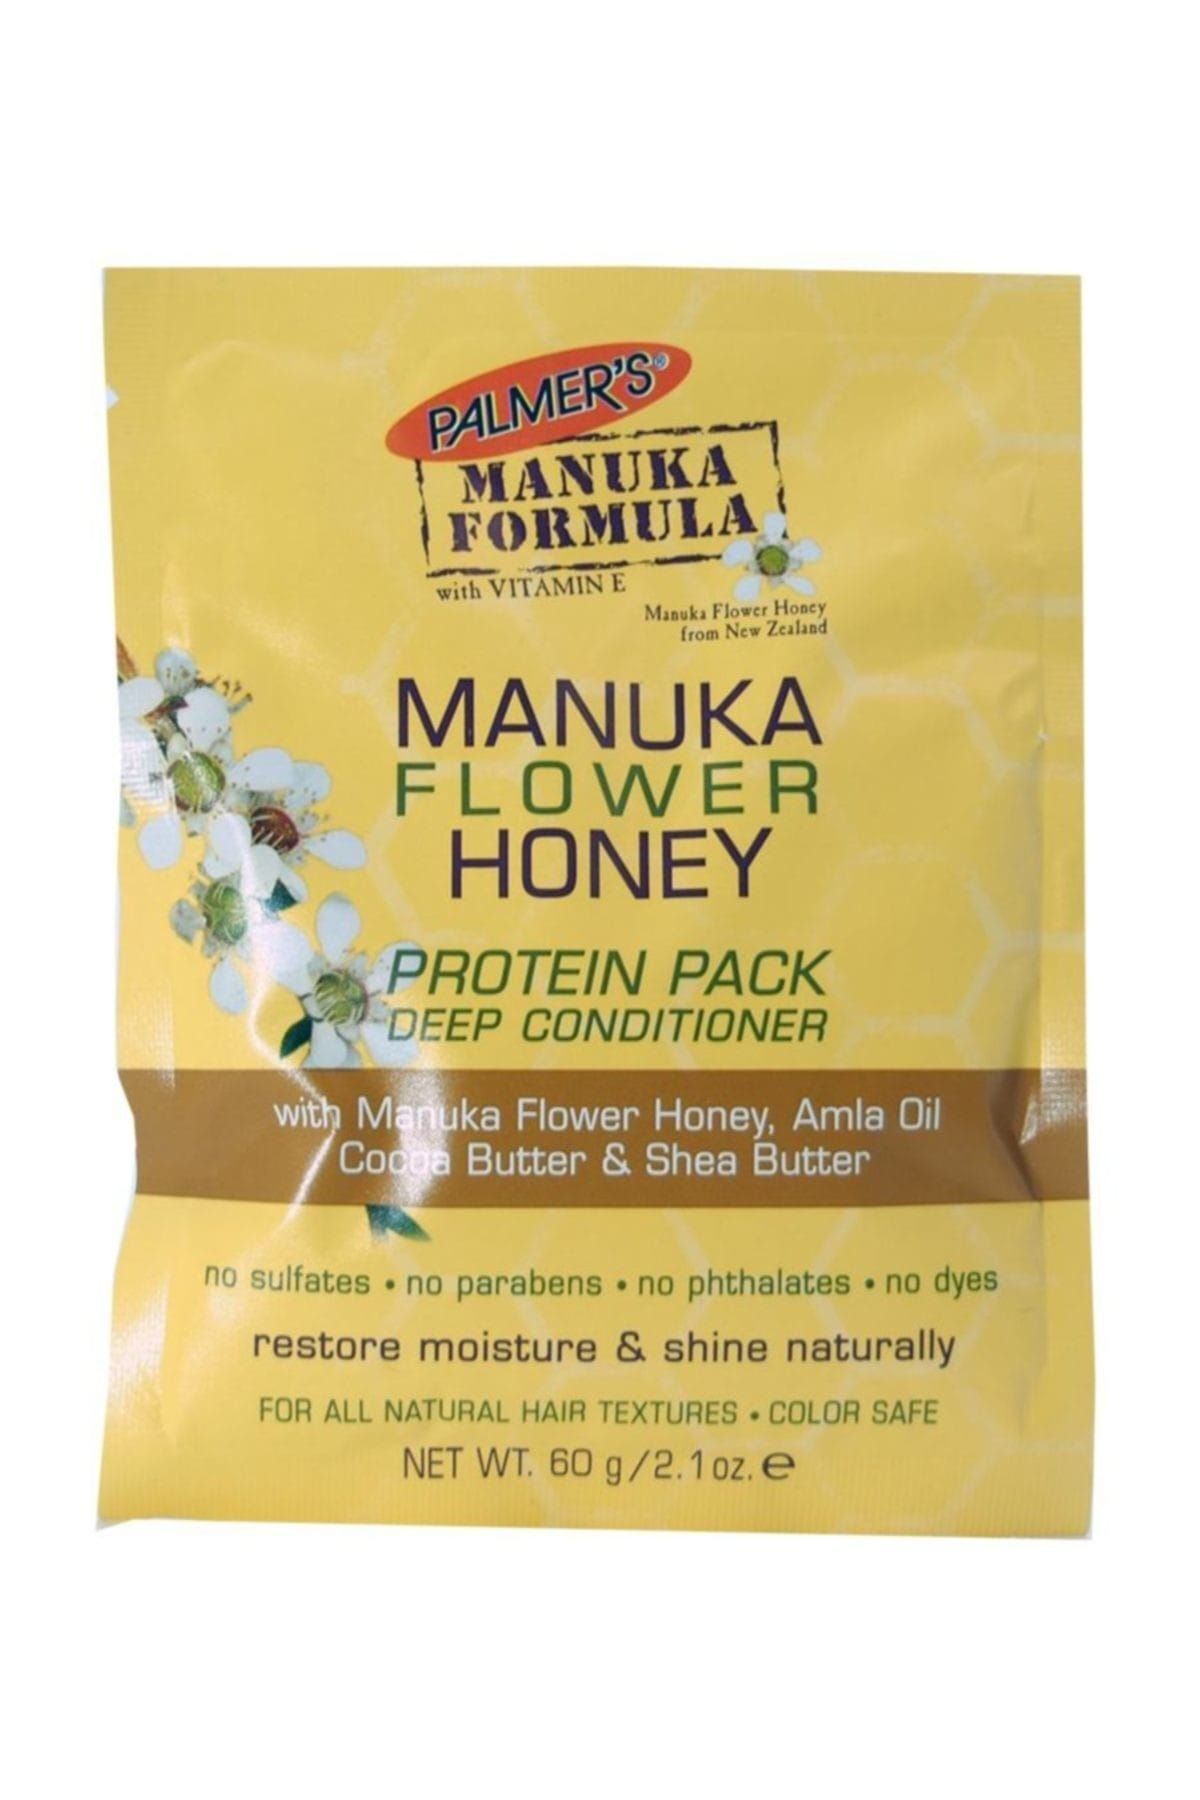 PALMER'S Palmers Manuka Formula Manuka Flower Honey 60g